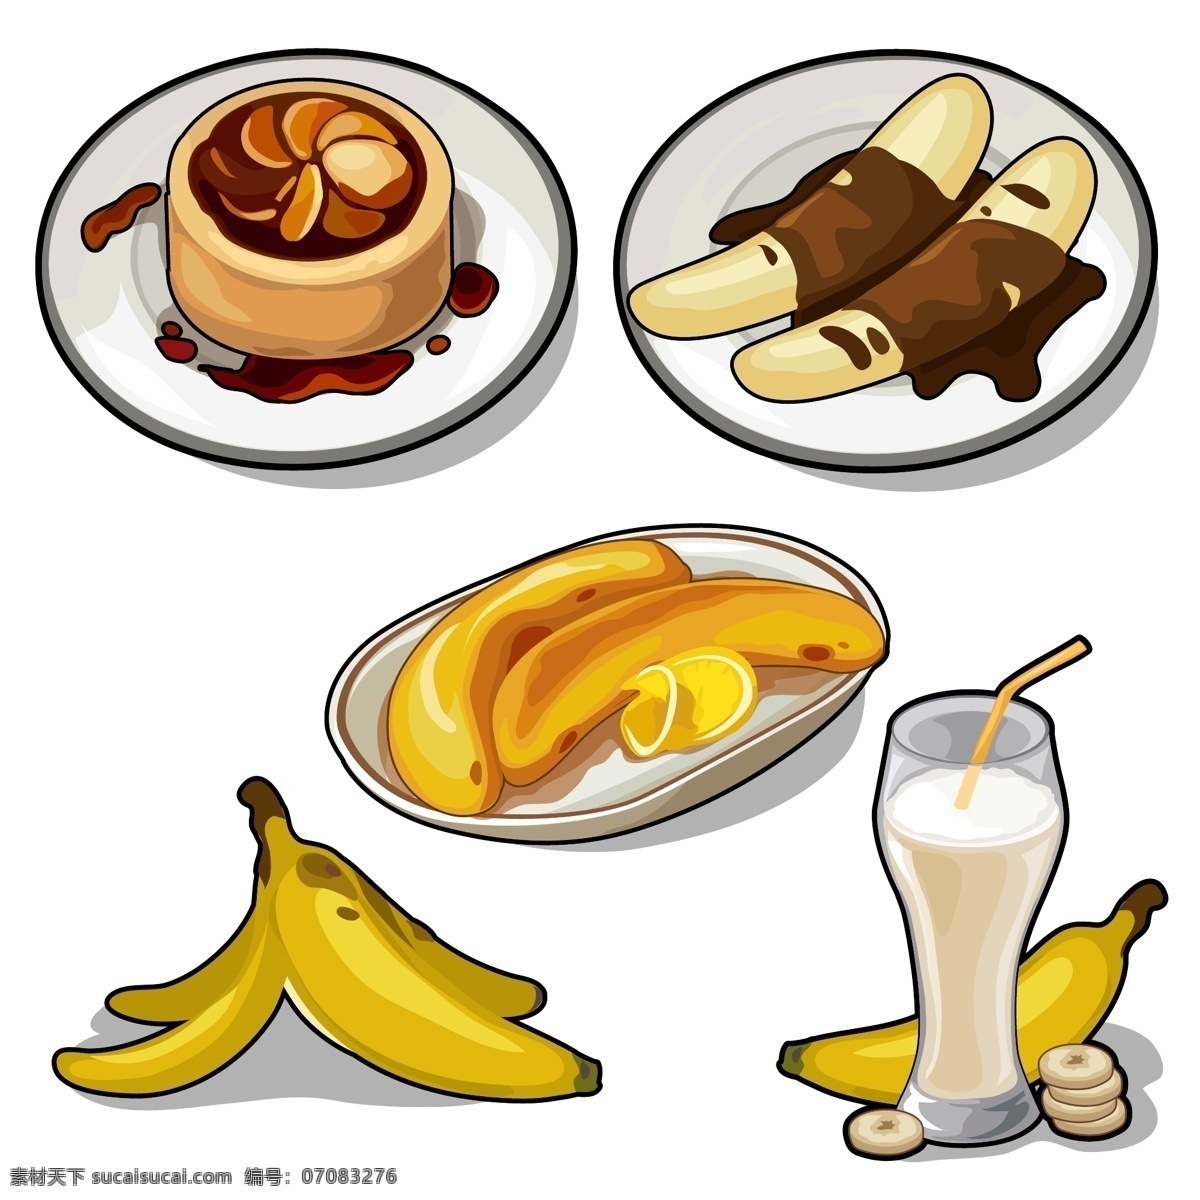 卡通 香蕉 美食 插画 卡通水果 卡通香蕉 果汁 蛋糕 卡通美食漫画 卡通食物 美味 美食插画 餐饮美食 生活百科 矢量素材